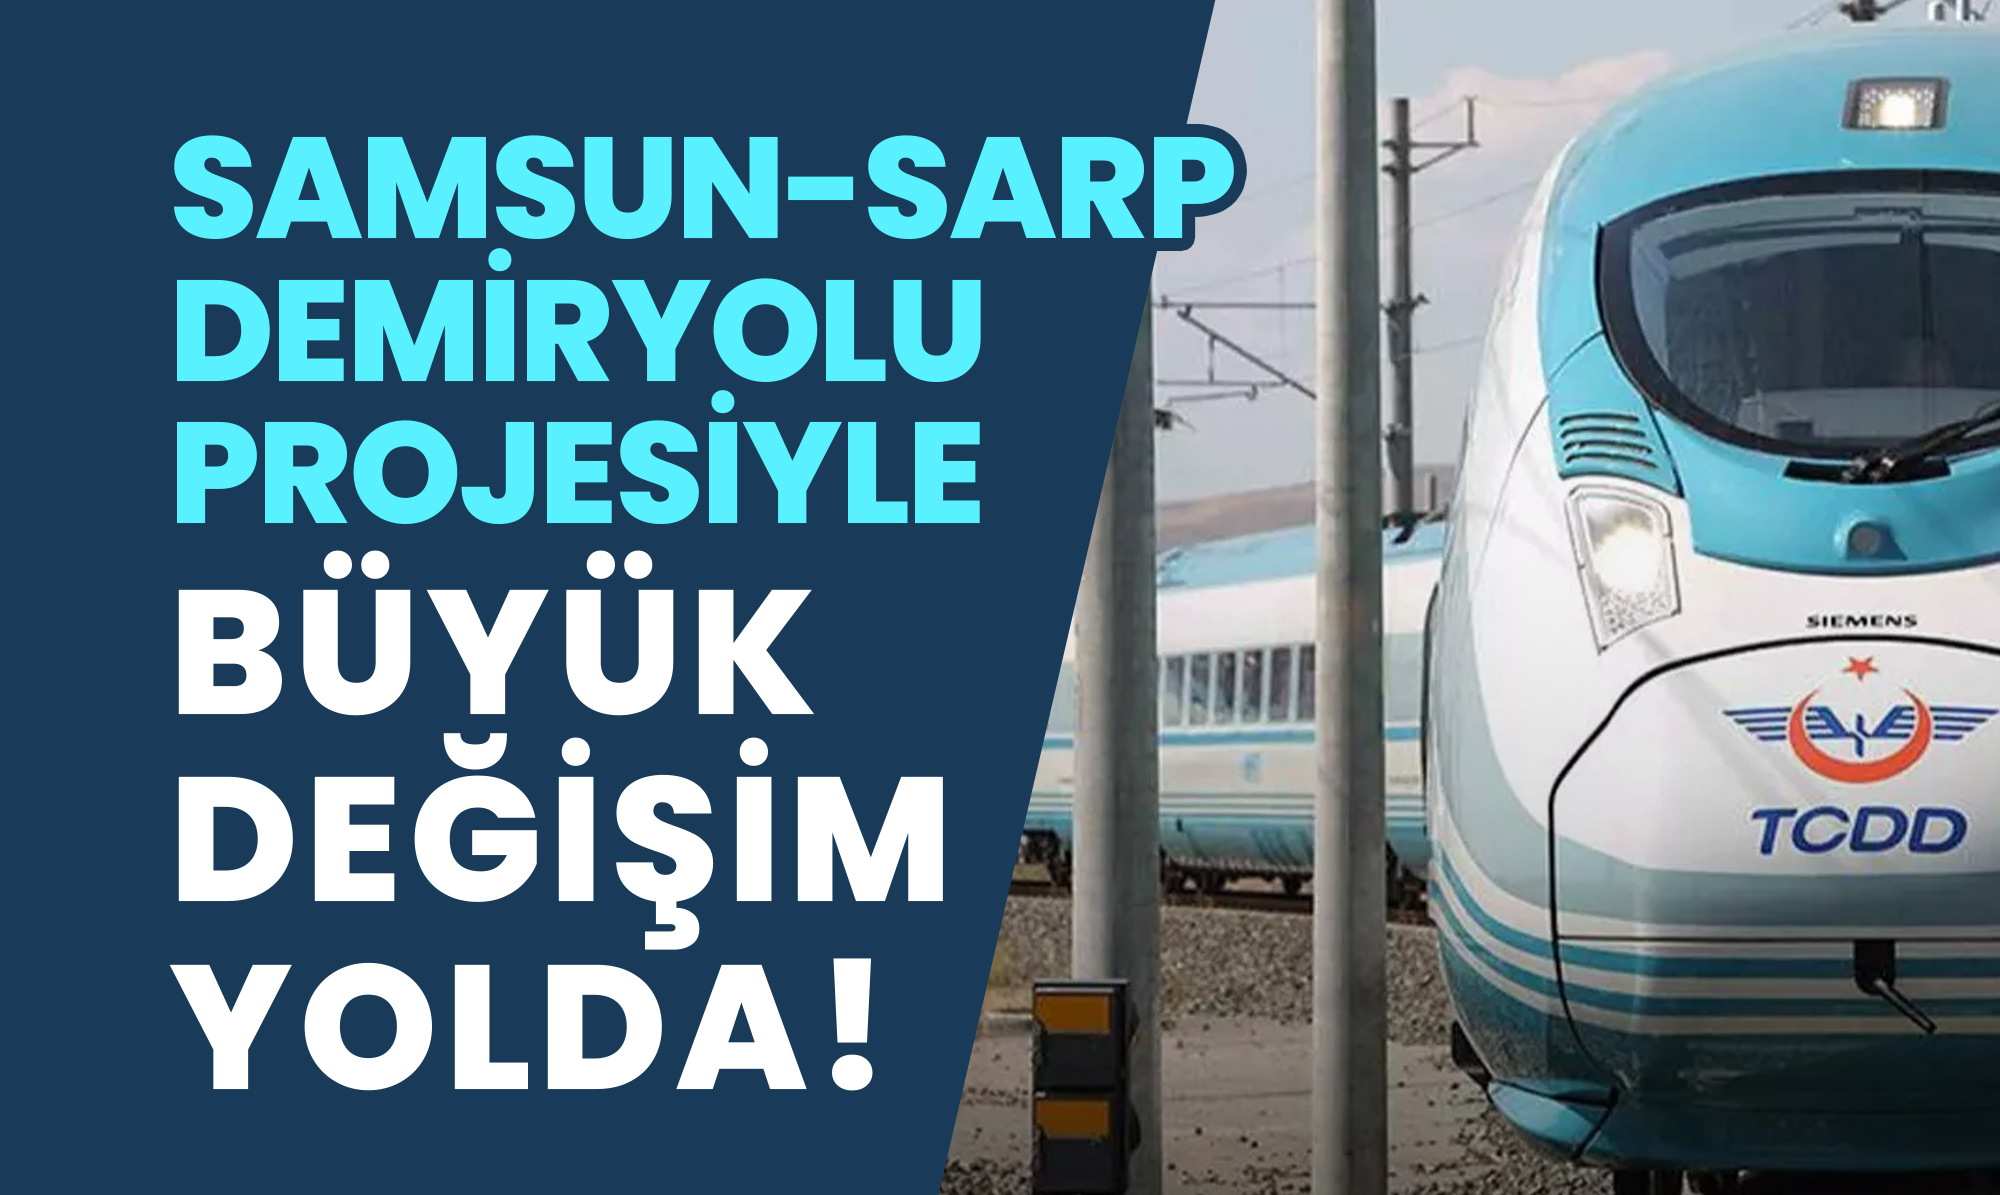 Samsun-Sarp Demiryolu Projesiyle Büyük Değişim Yolda!